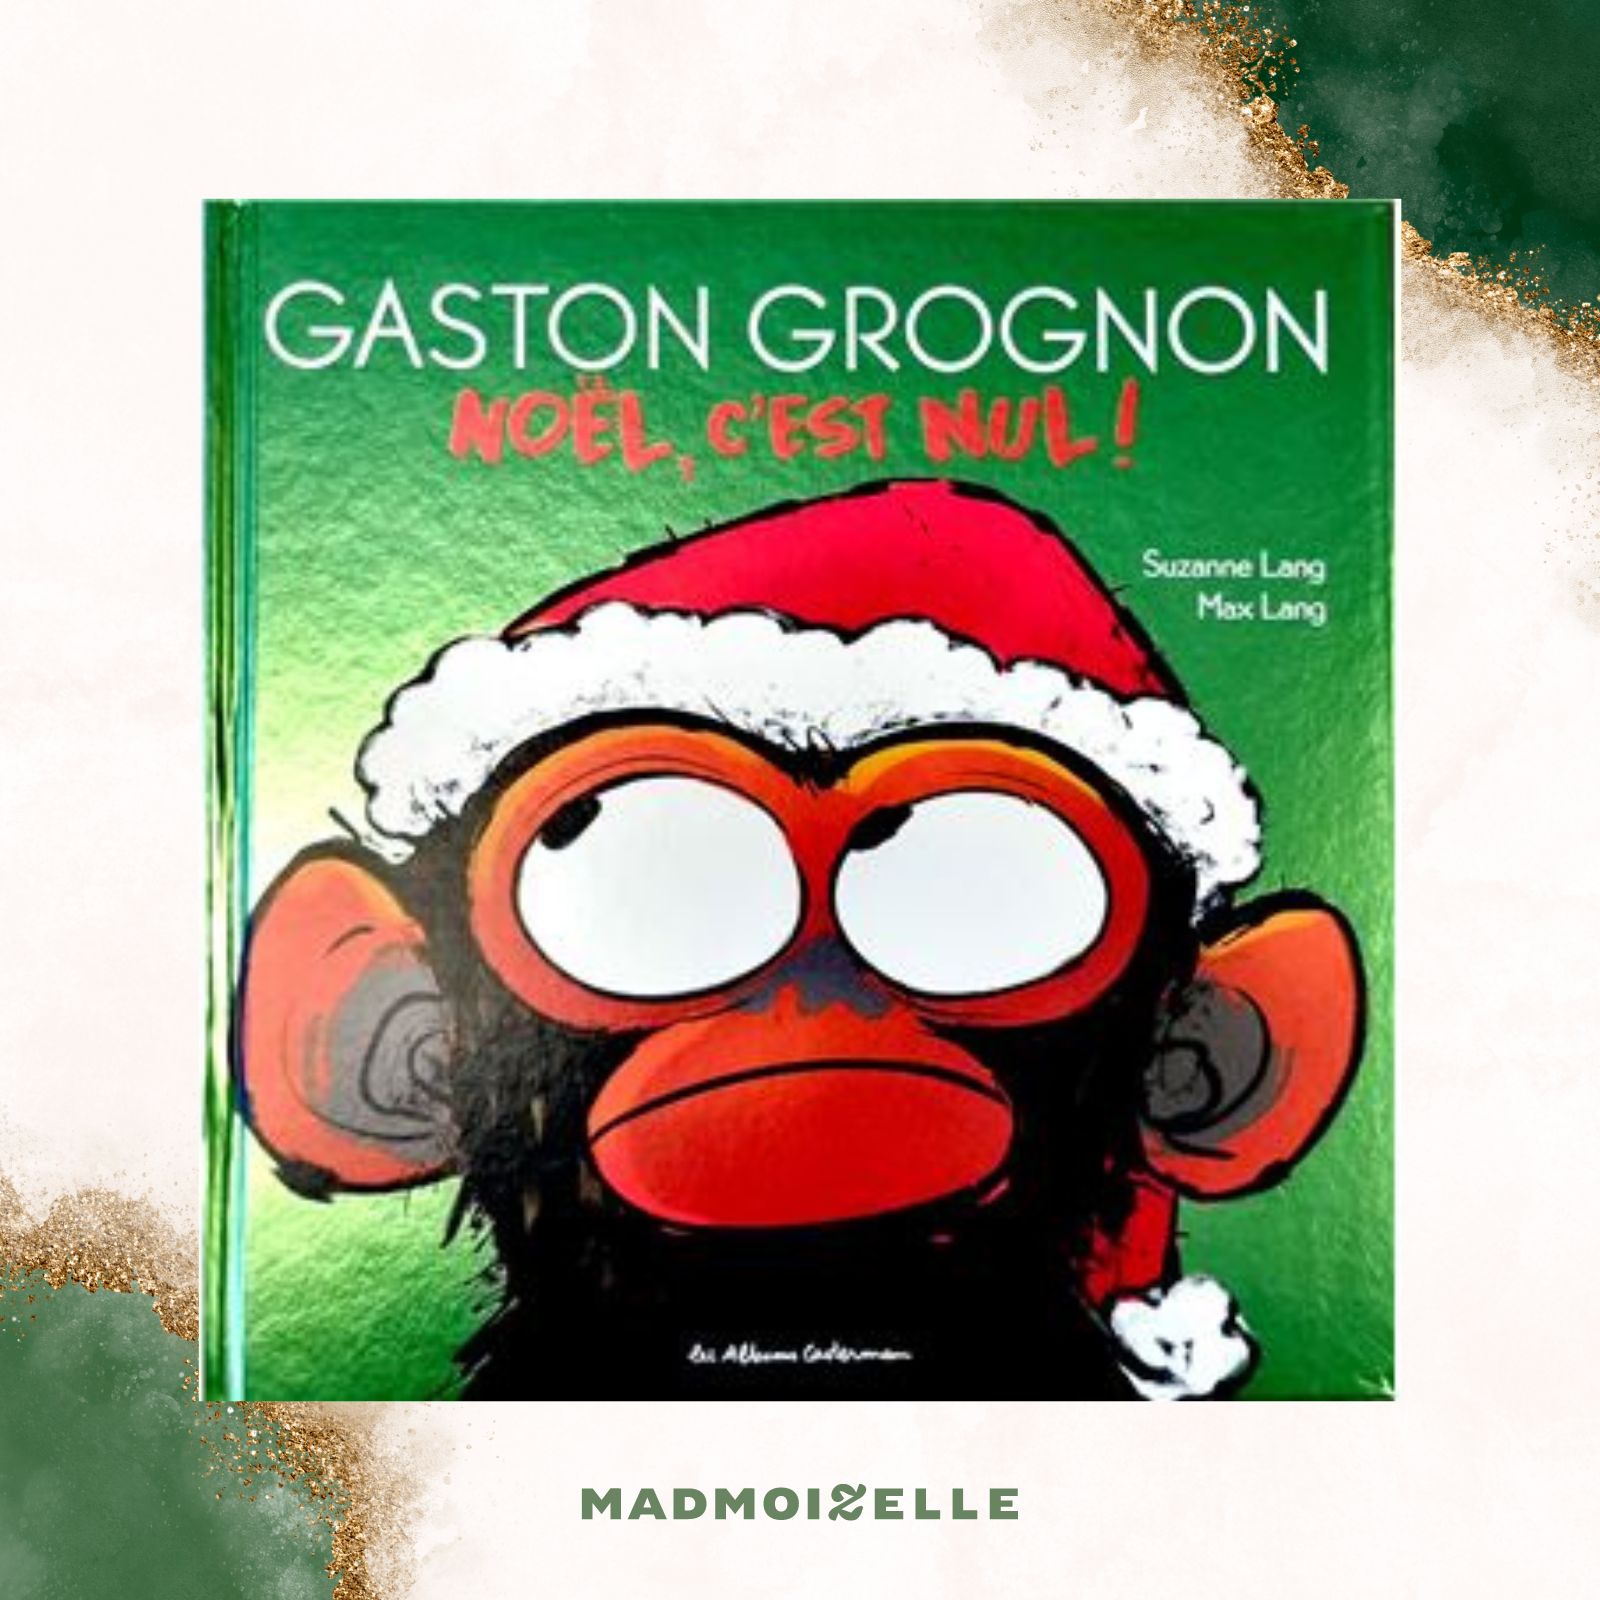 Gaston Grognon